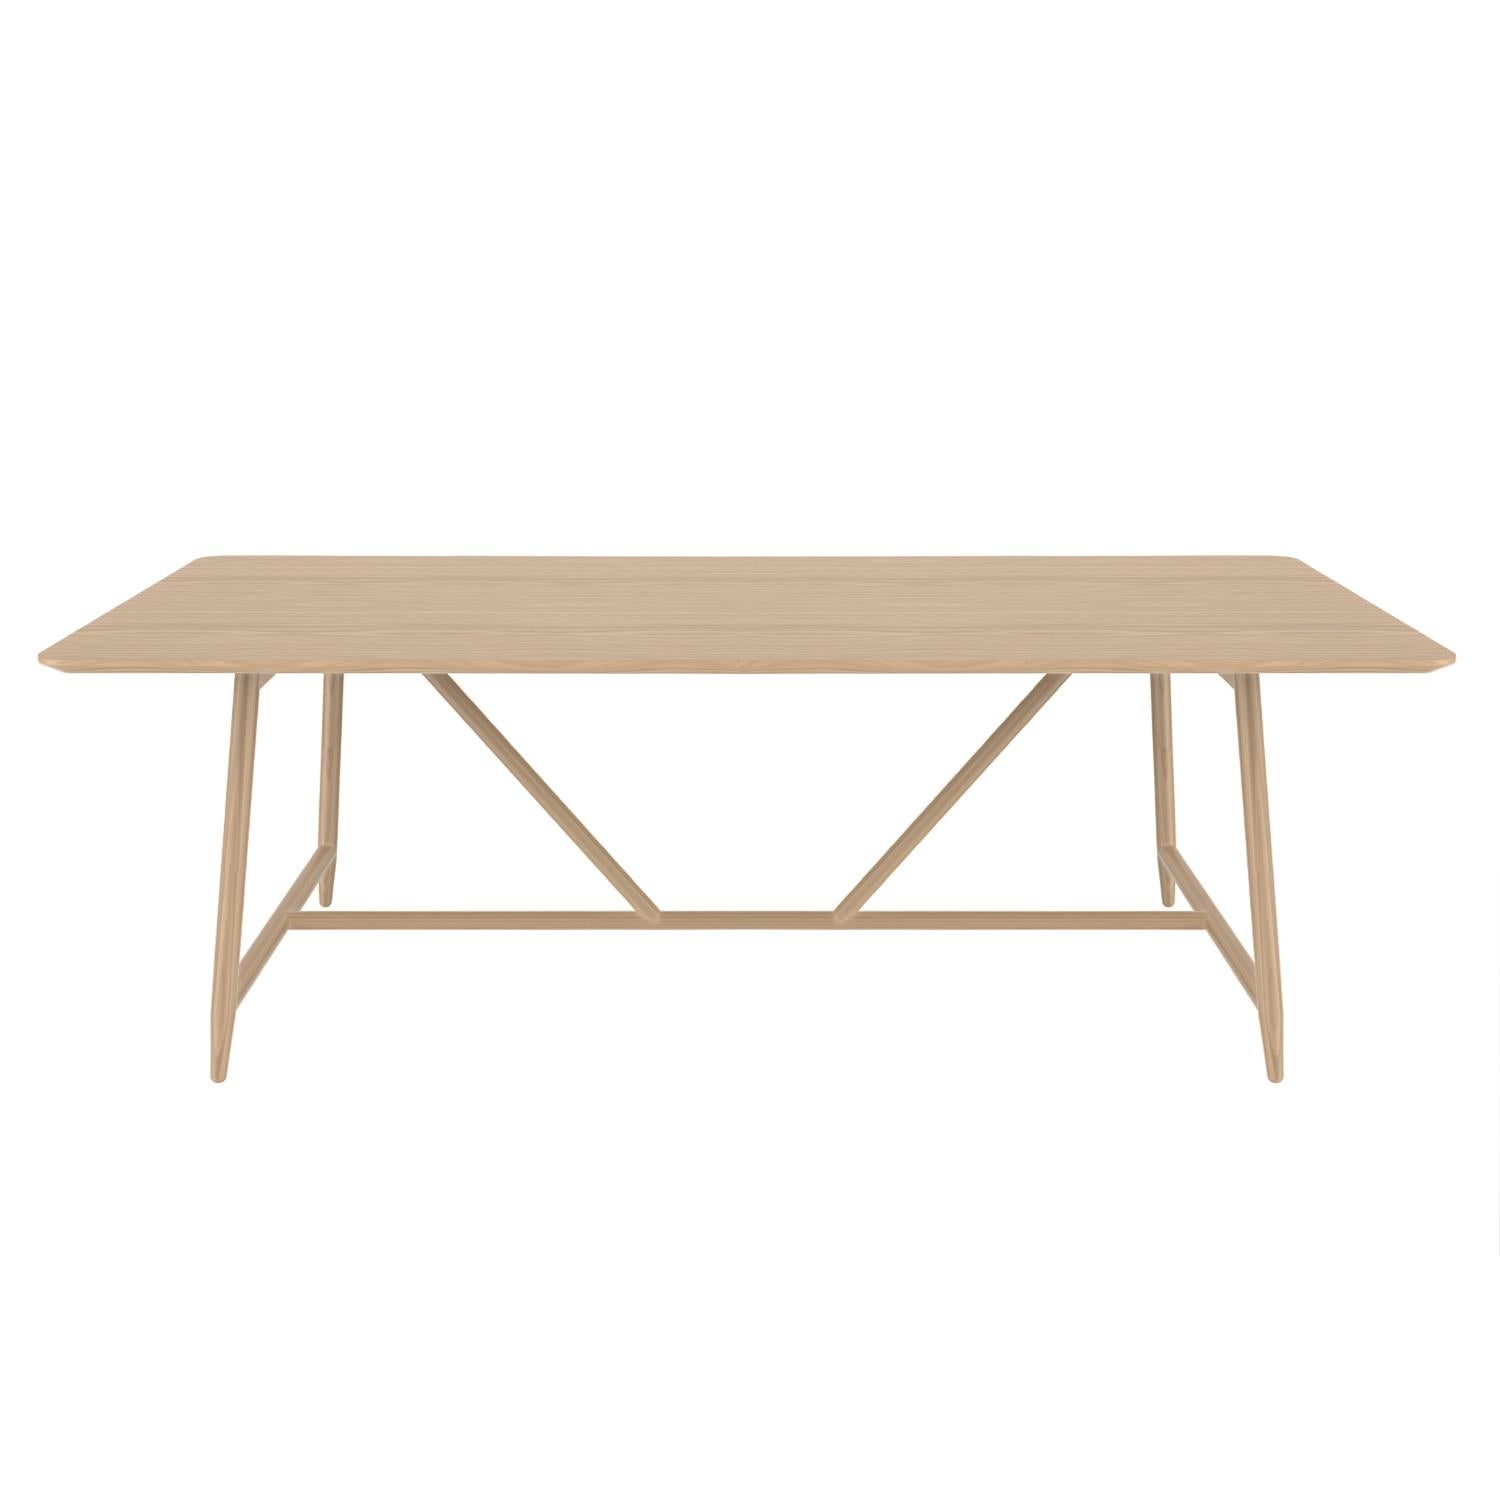 Dal est une table de salle à manger personnalisable qui est purement simple tout en restant solide et élégante. Tout comme la beauté nue et l'élégance cachée dans les branches des arbres, car c'est l'idée directrice qui a présidé à la conception de